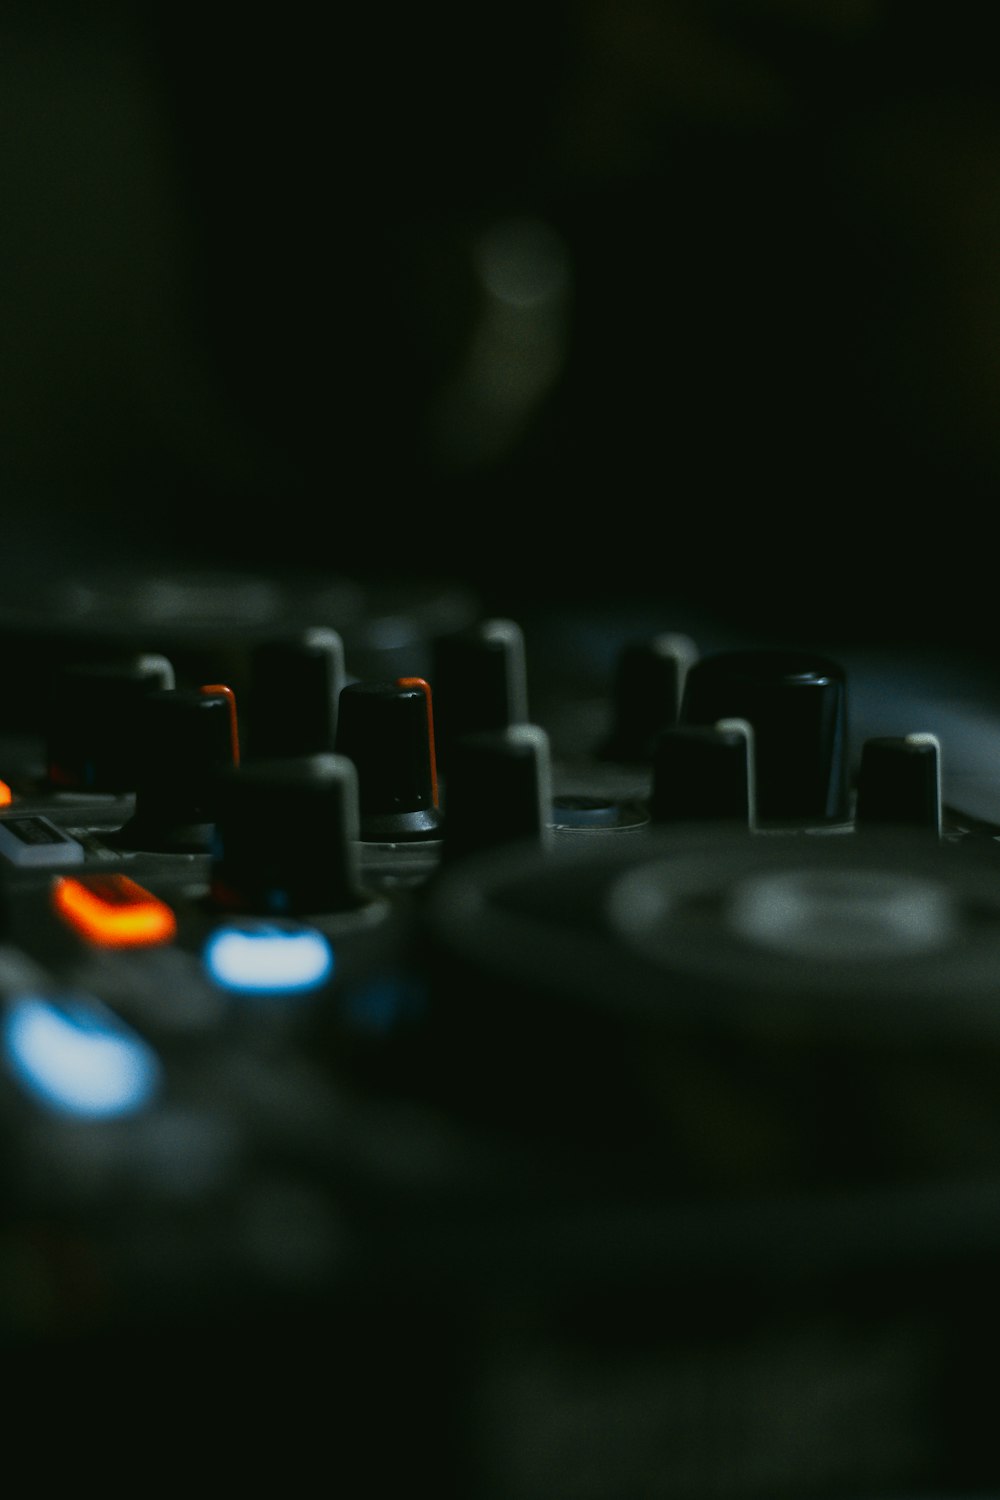 Eine Nahaufnahme des Plattenspielers eines DJs in einem dunklen Raum